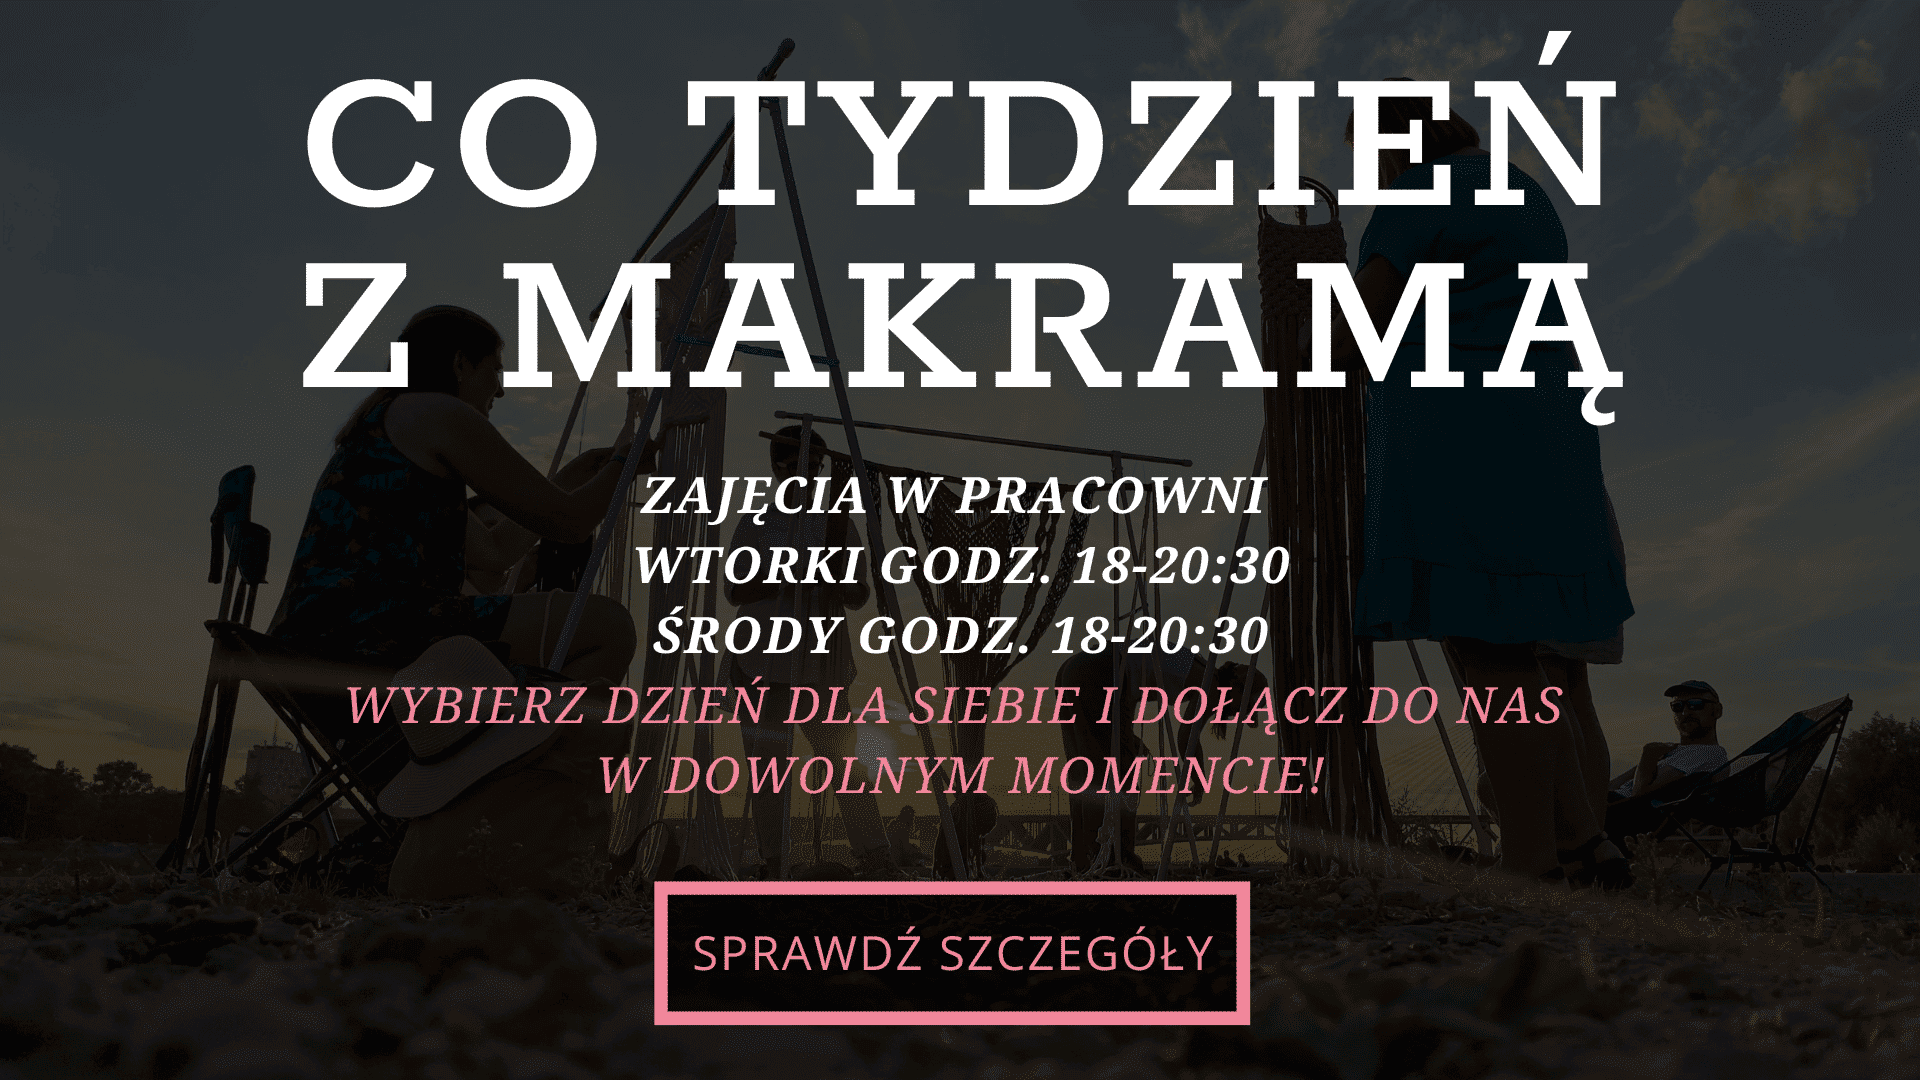 Cykliczne warsztaty makramy w Warszawie